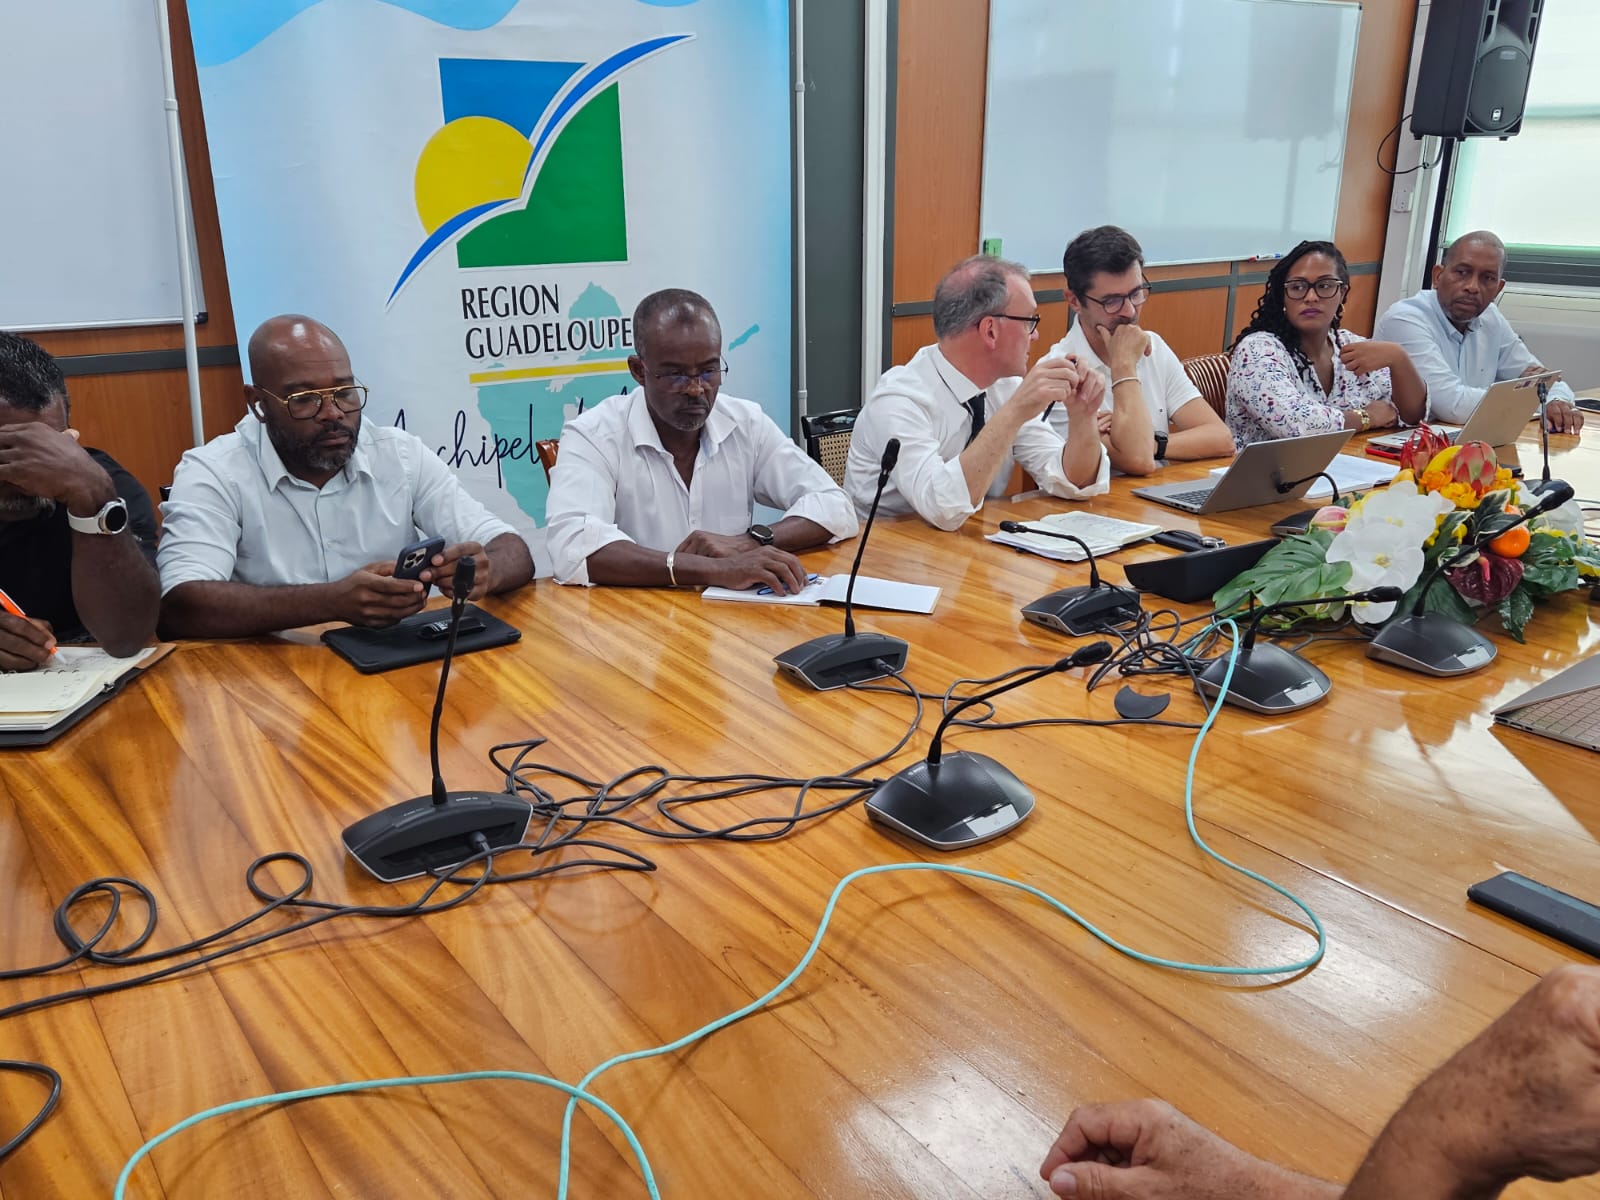     [DIRECT] Guadeloupe : conflit de la canne, le collectif refuse la proposition, Jarry toujours bloquée

